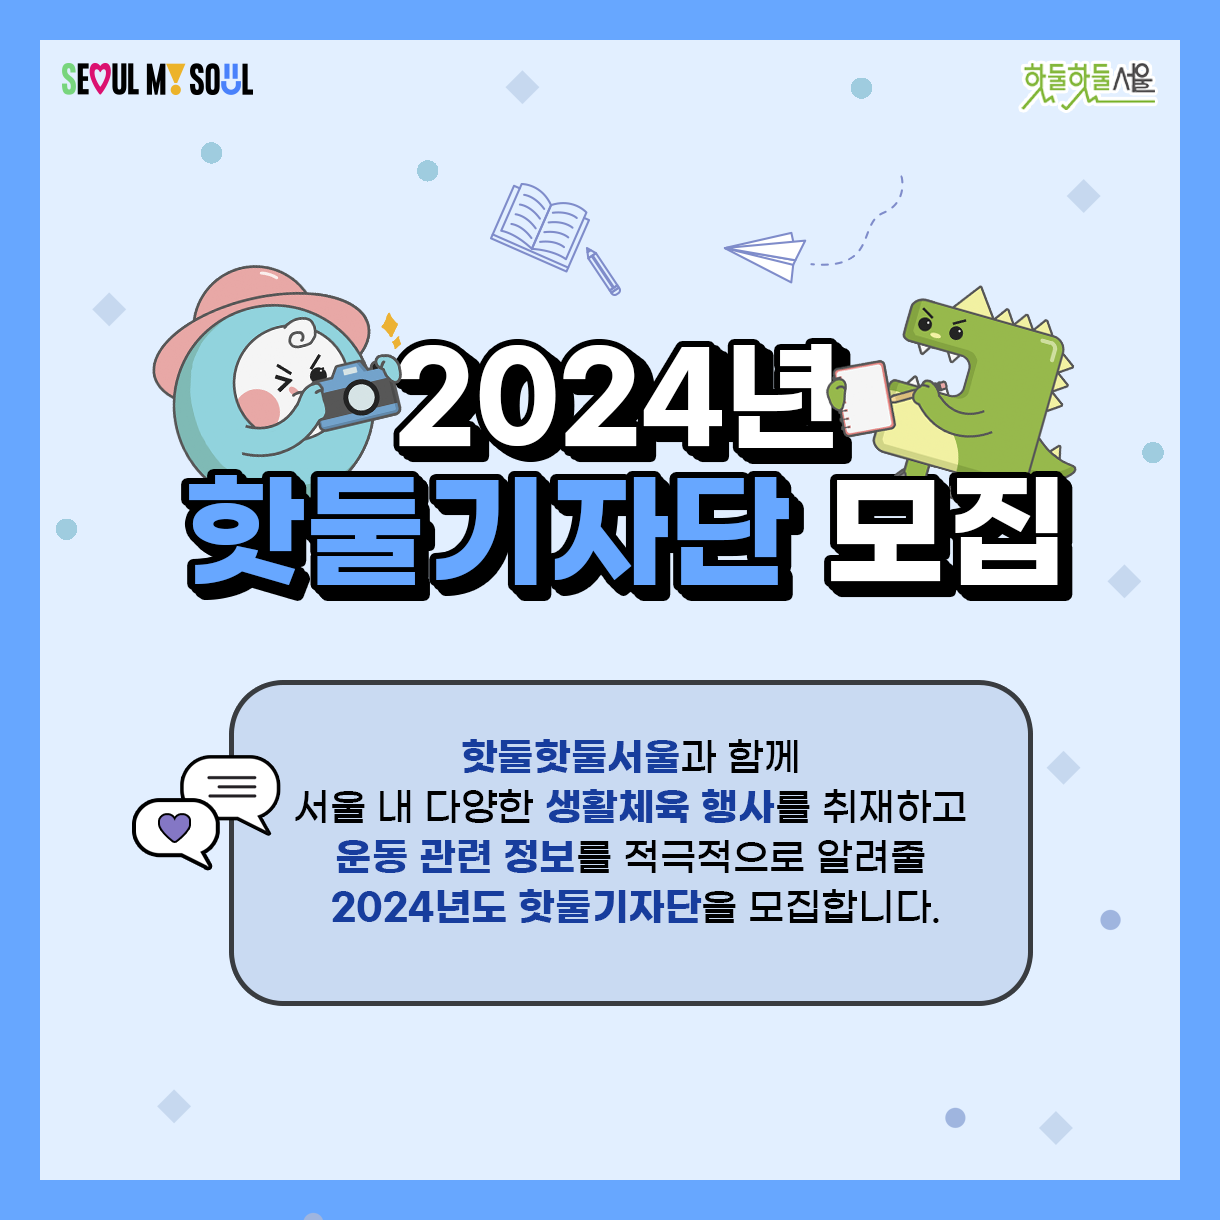 
2024년
핫둘기자단 모집

핫둘핫둘서울과 함께
서울 내 다양한 생활체육 행사를 취재하고
운동 관련 정보를 적극적으로 알려줄
2024년도 핫둘기자단을 모집합니다.
